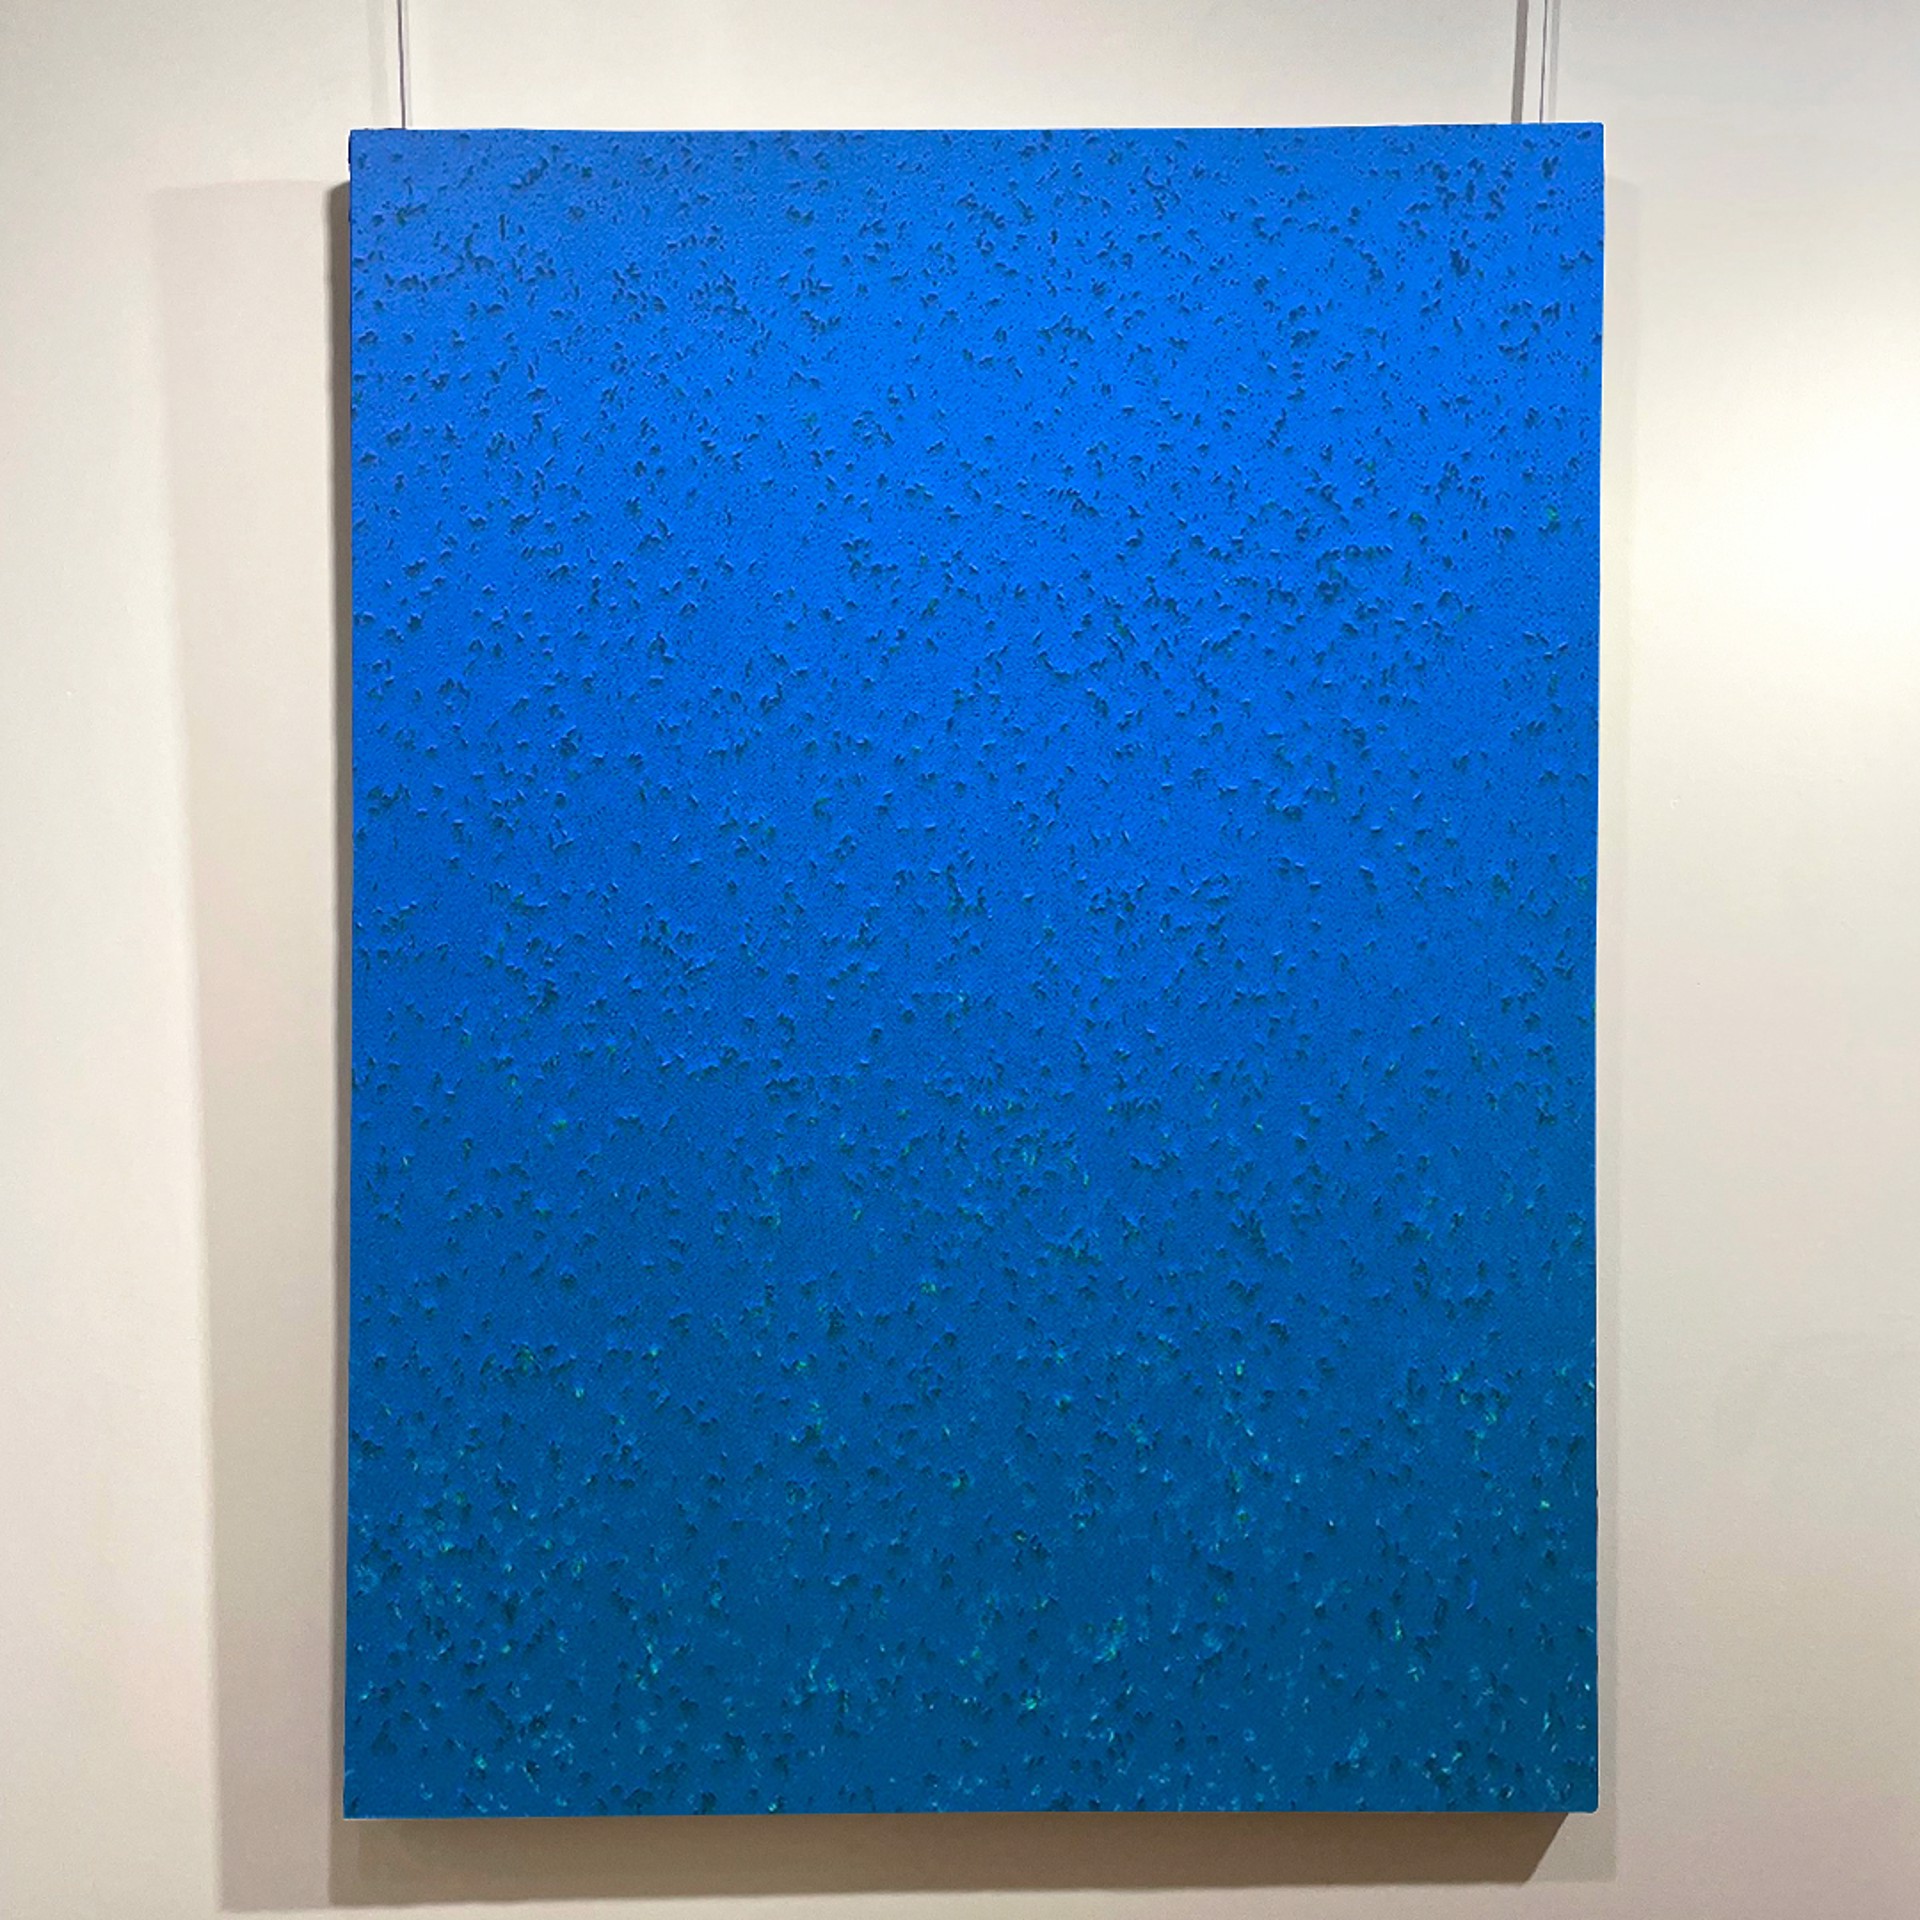 Blue Horizon by Sophie-Alexia Joly de Lotbinière